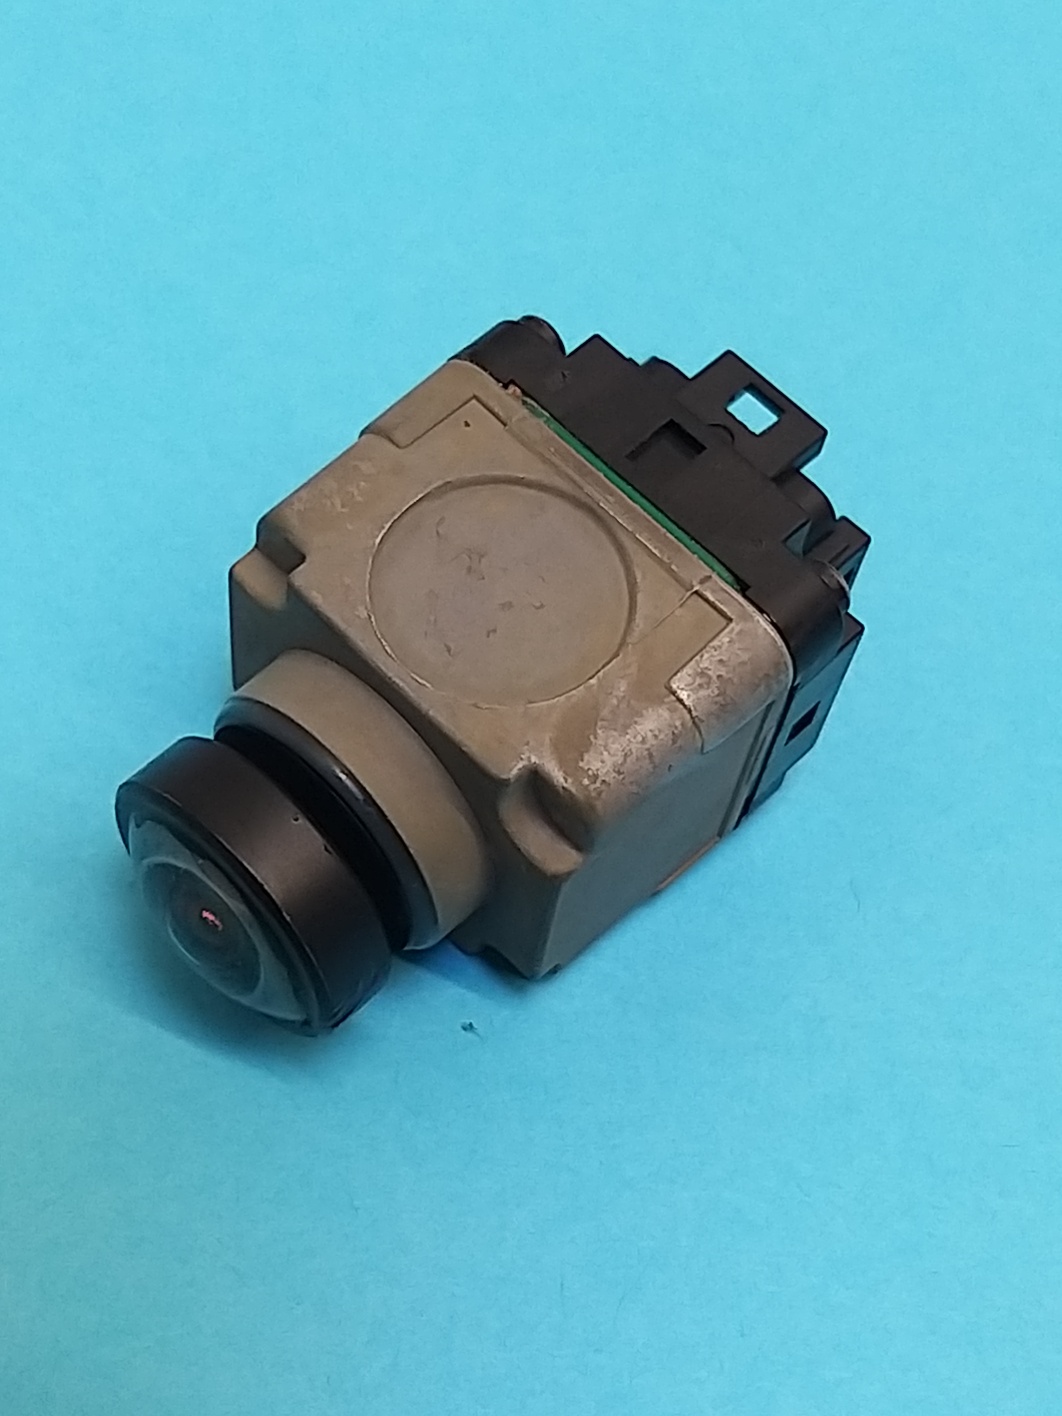 Камера переднего обзора оригинал Range Rover LR052028 (JPLA-19H422-AC) БУ 2018г.